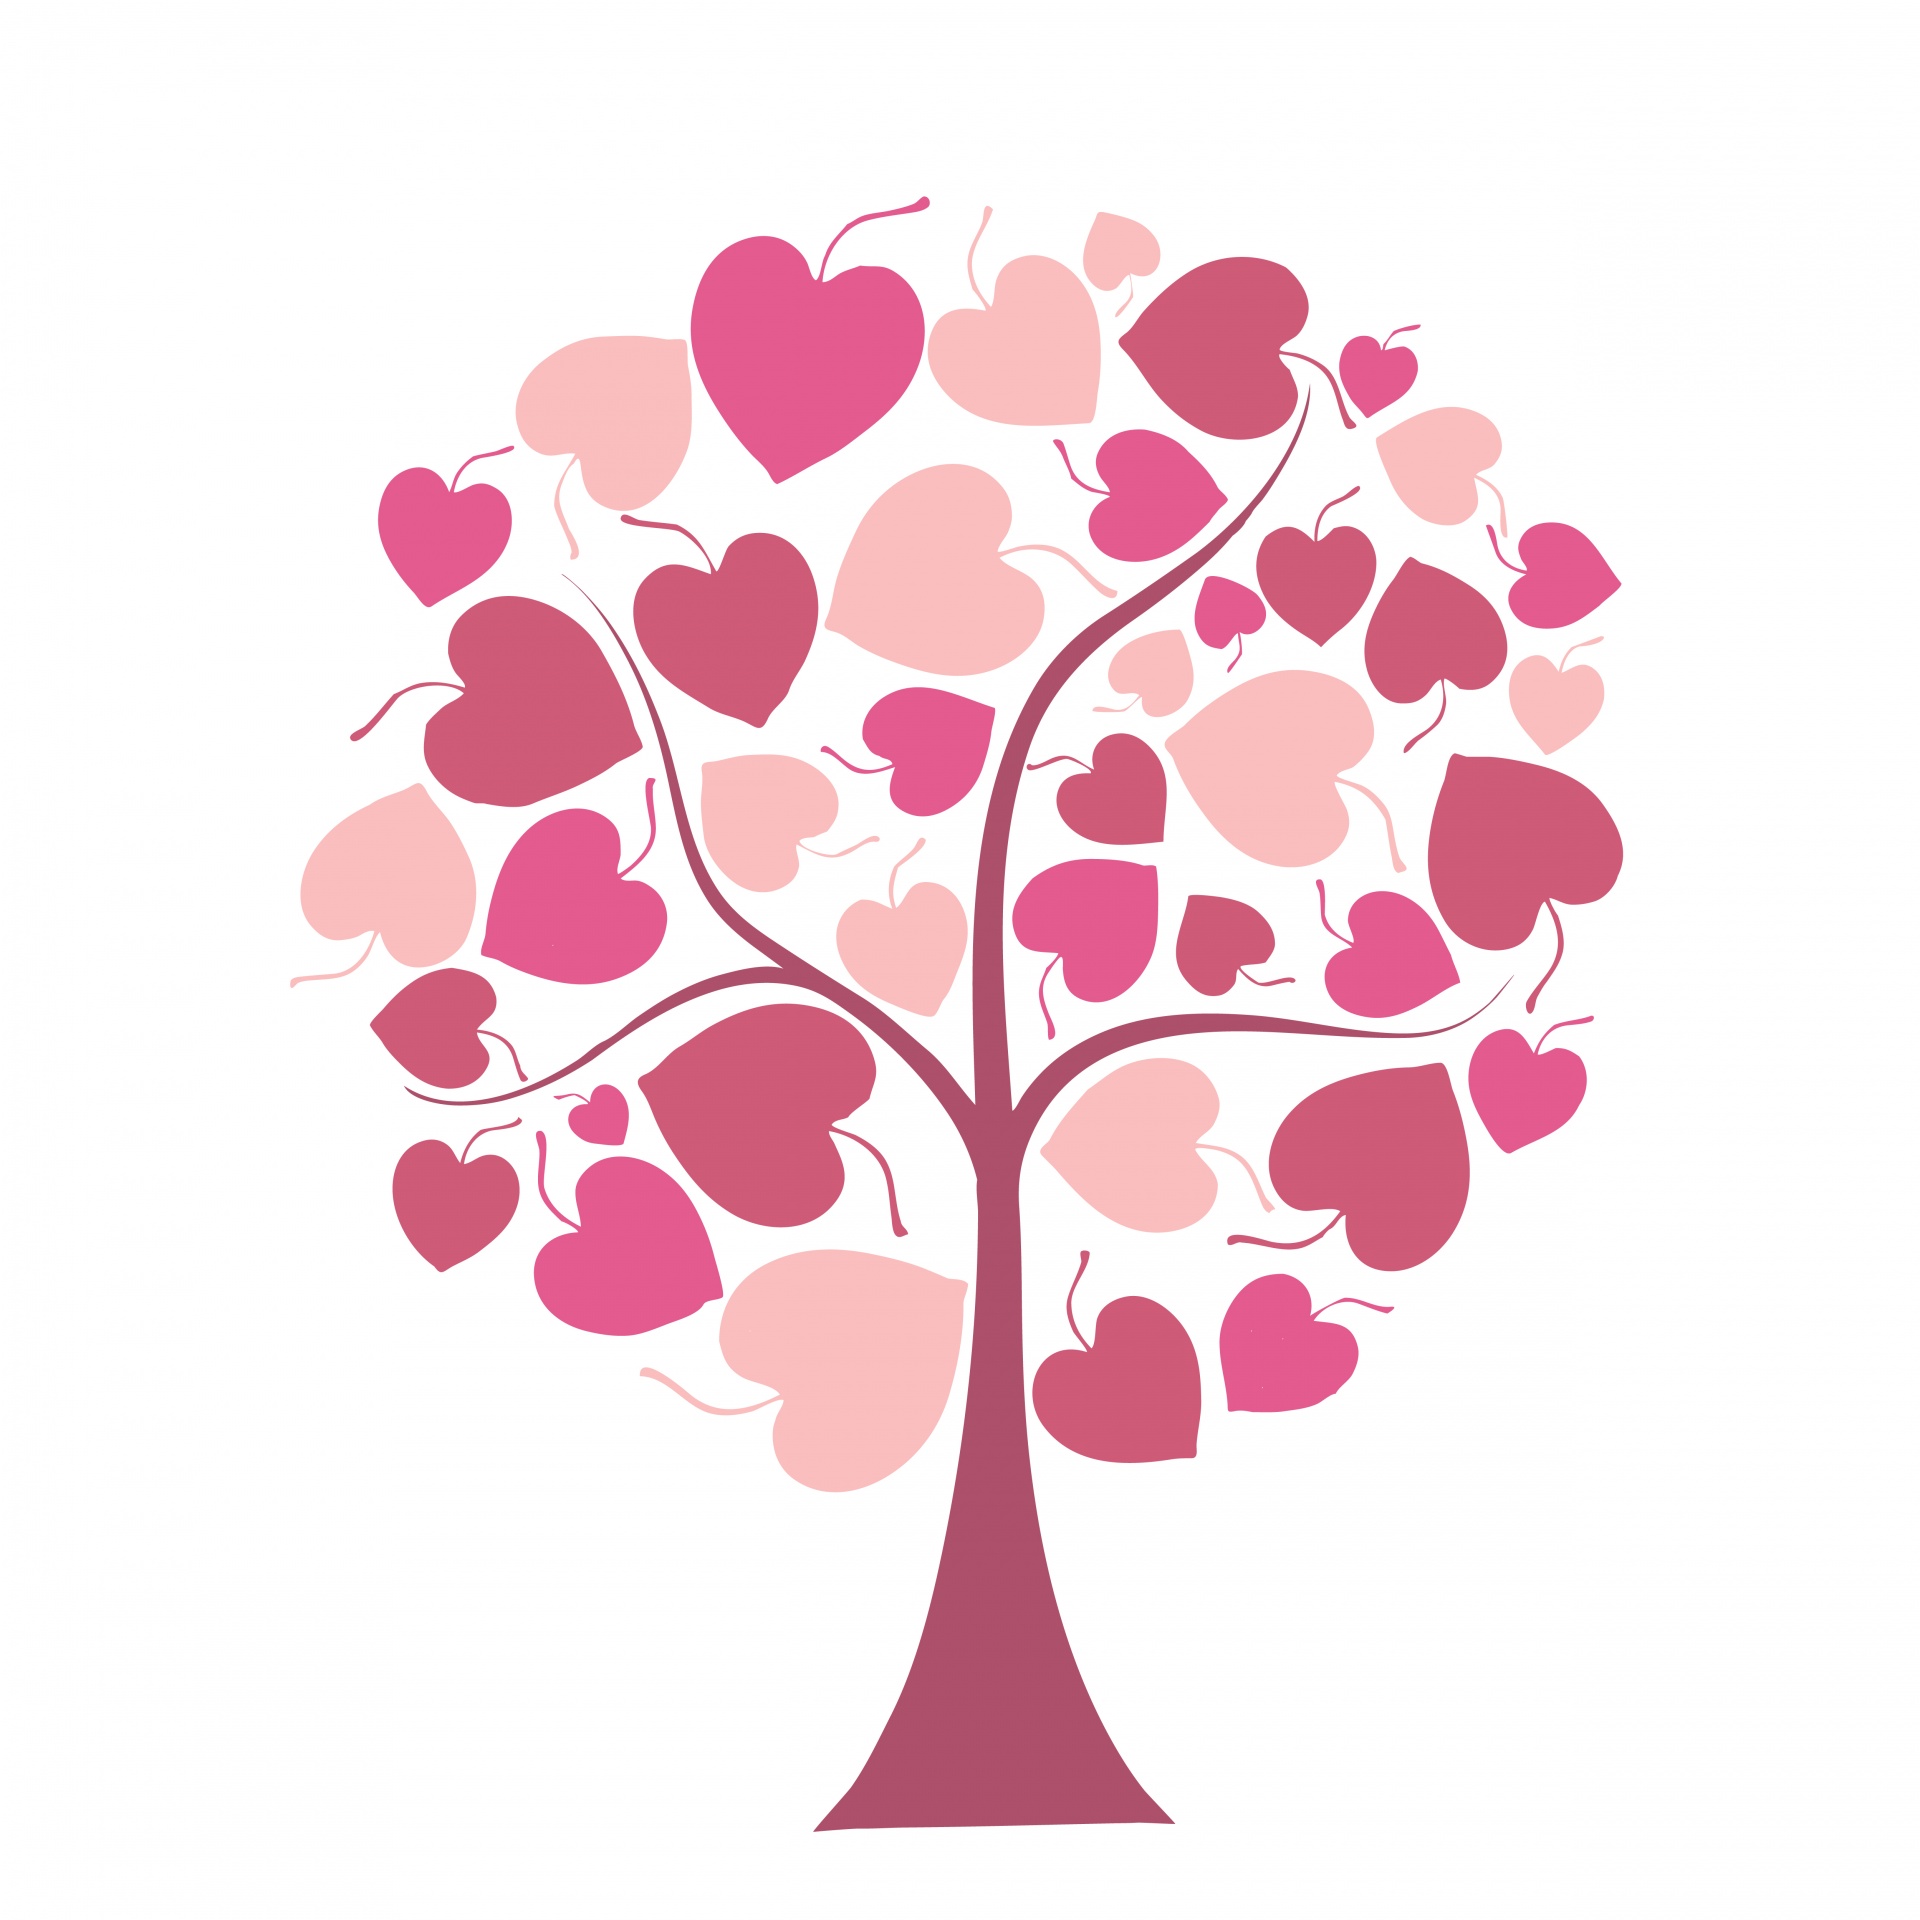 Pink Hearts Tree Clipart Free Stock Photo - Public Domain ...